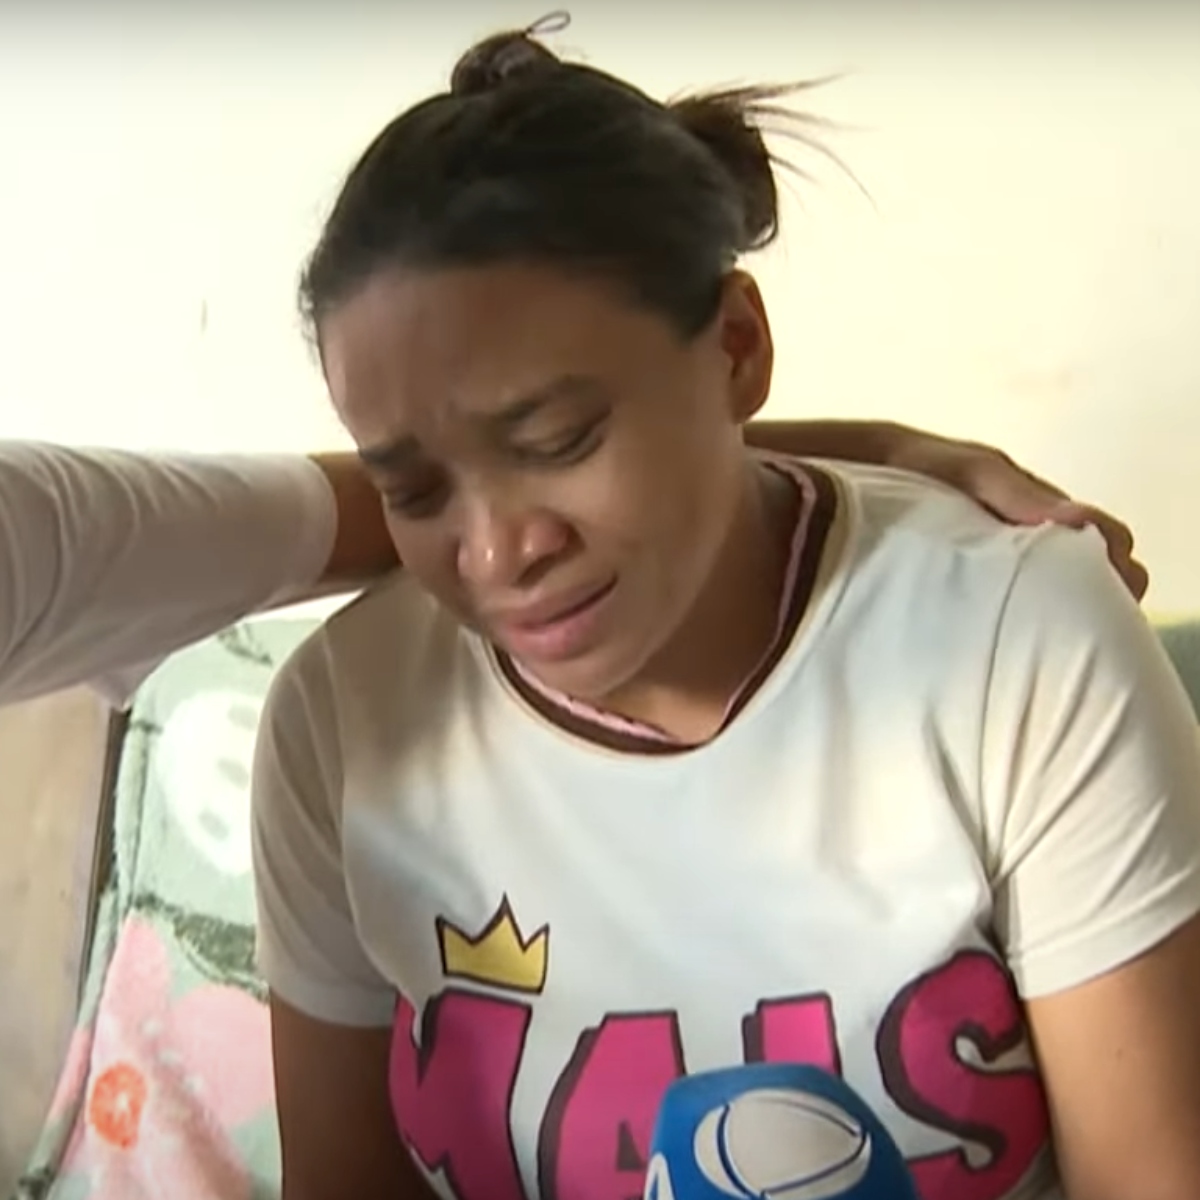  Caso Kevelin Sofia: “Nunca vou me perdoar”, diz mãe após filha ser abusada e morta 